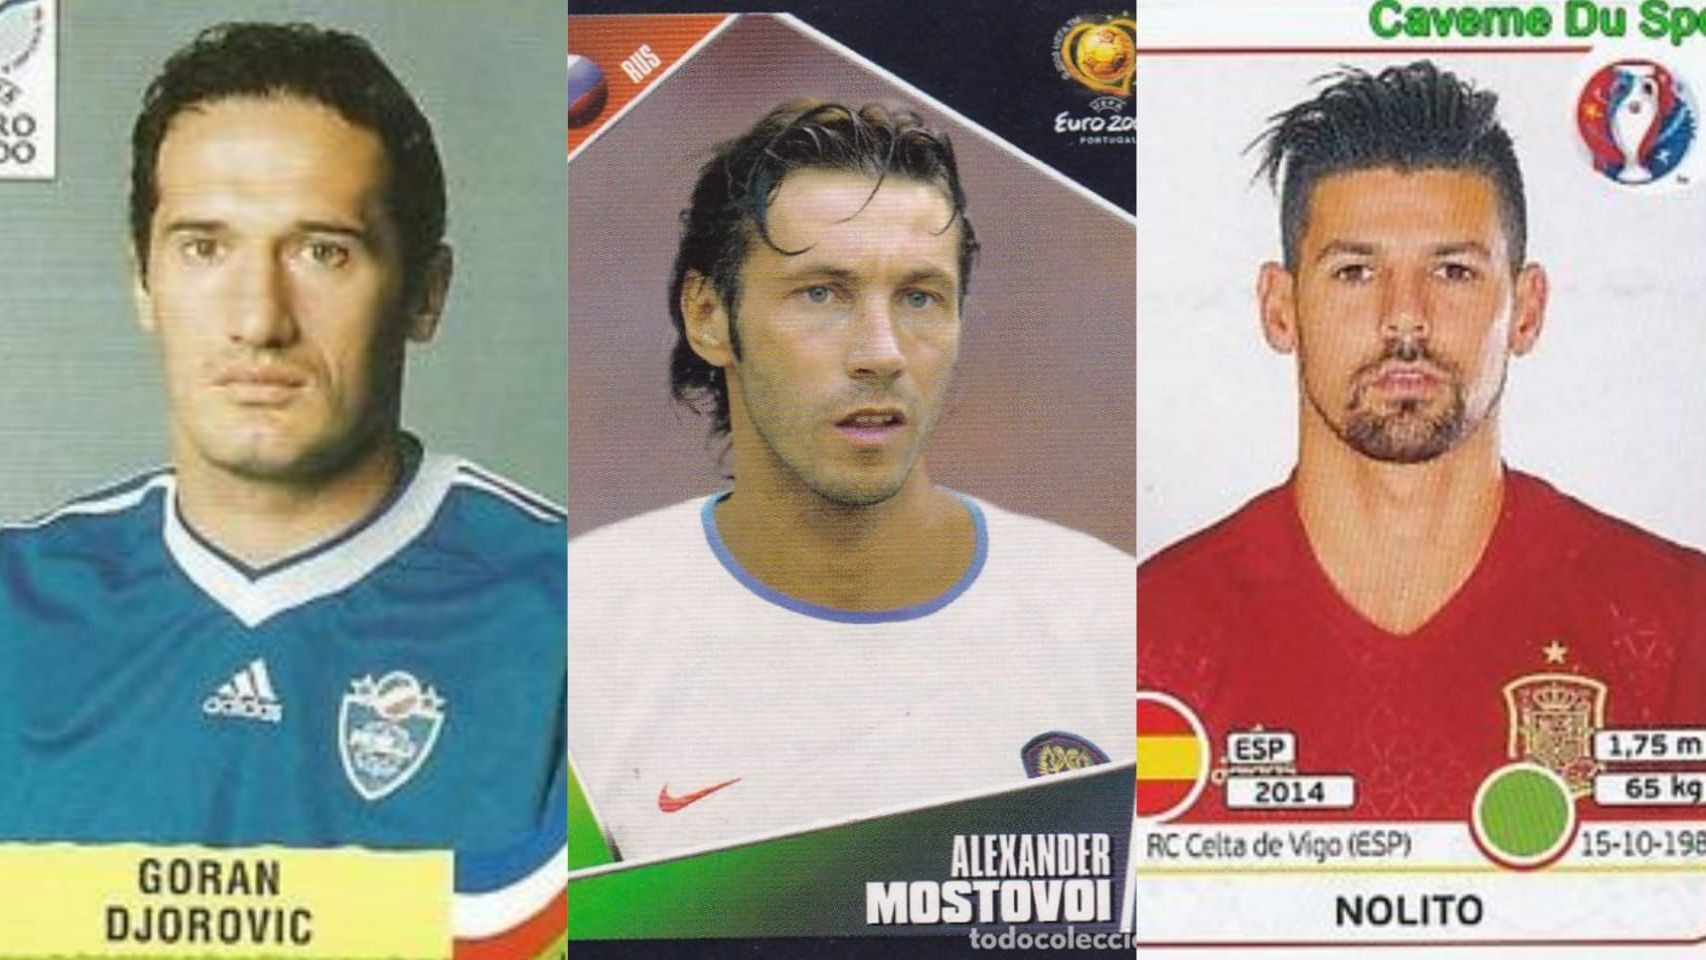 Djorovic, Mostovoi y Nolito son tres de los afortunados futbolistas que han sido convocados para una Eurocopa jugando en el Celta